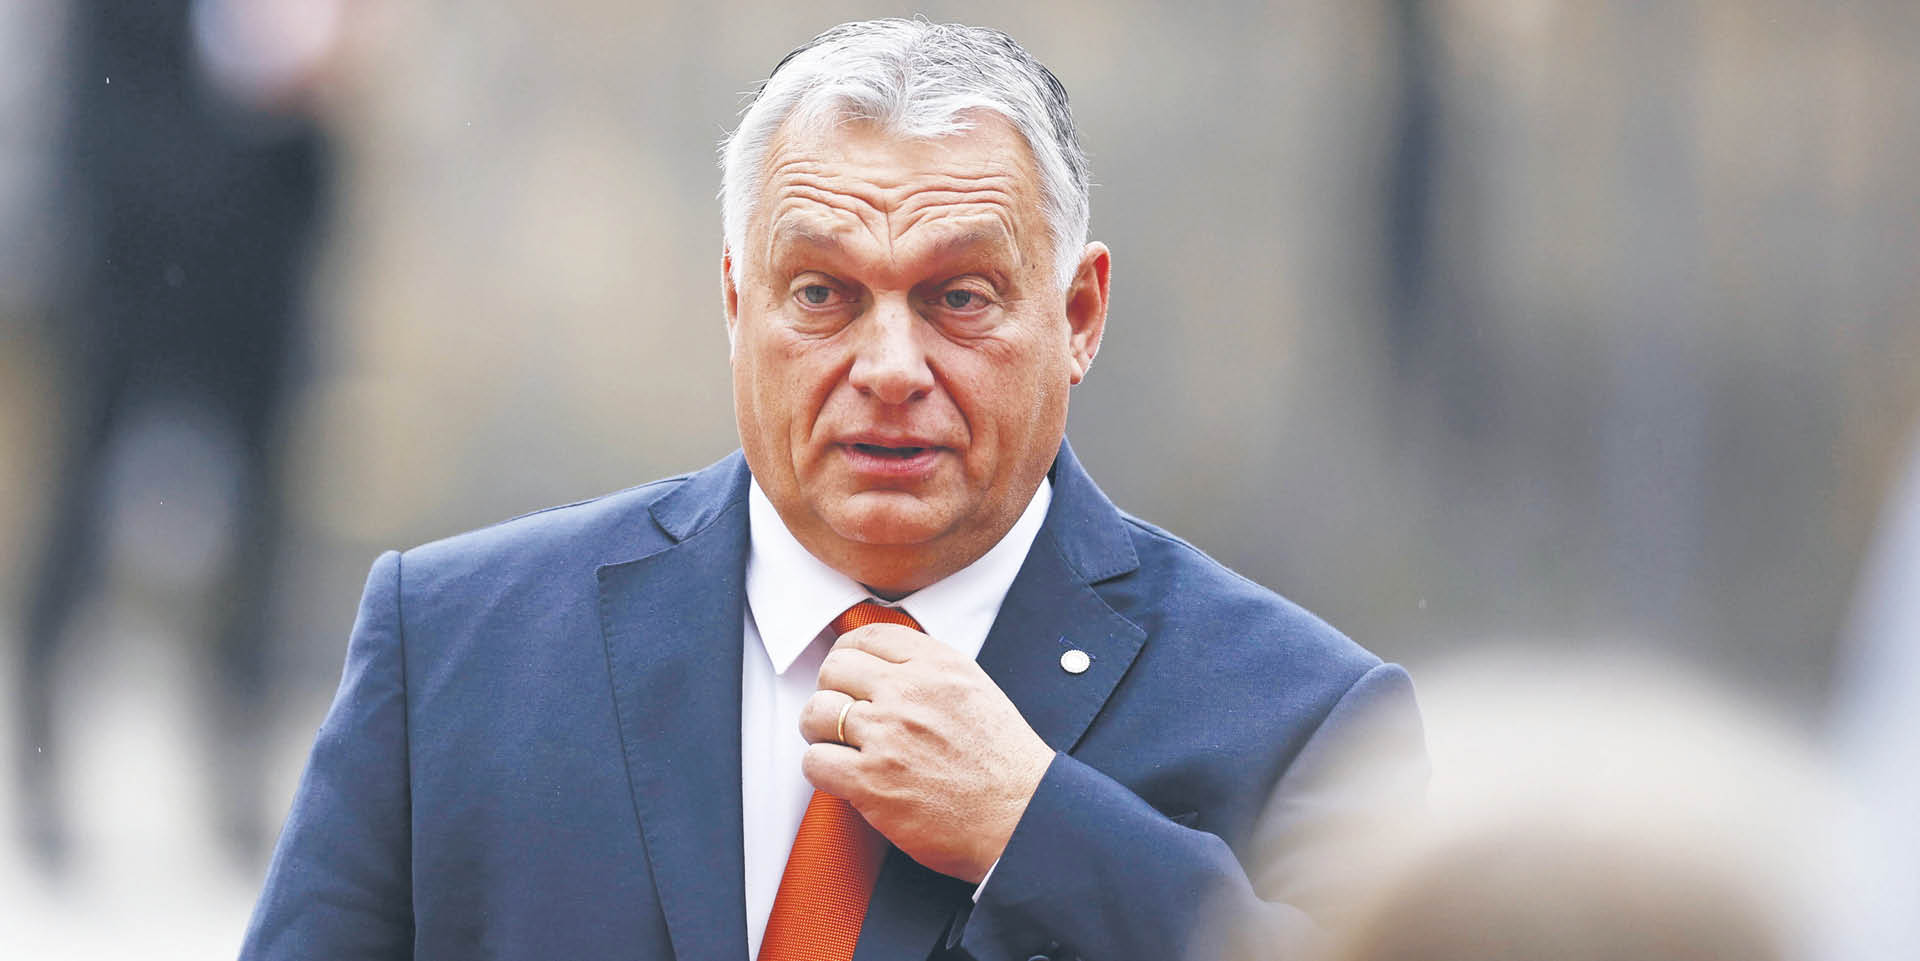 Viktor Orbán, uprawiając prorosyjską politykę, realnie szkodzi interesom Europy Środkowej